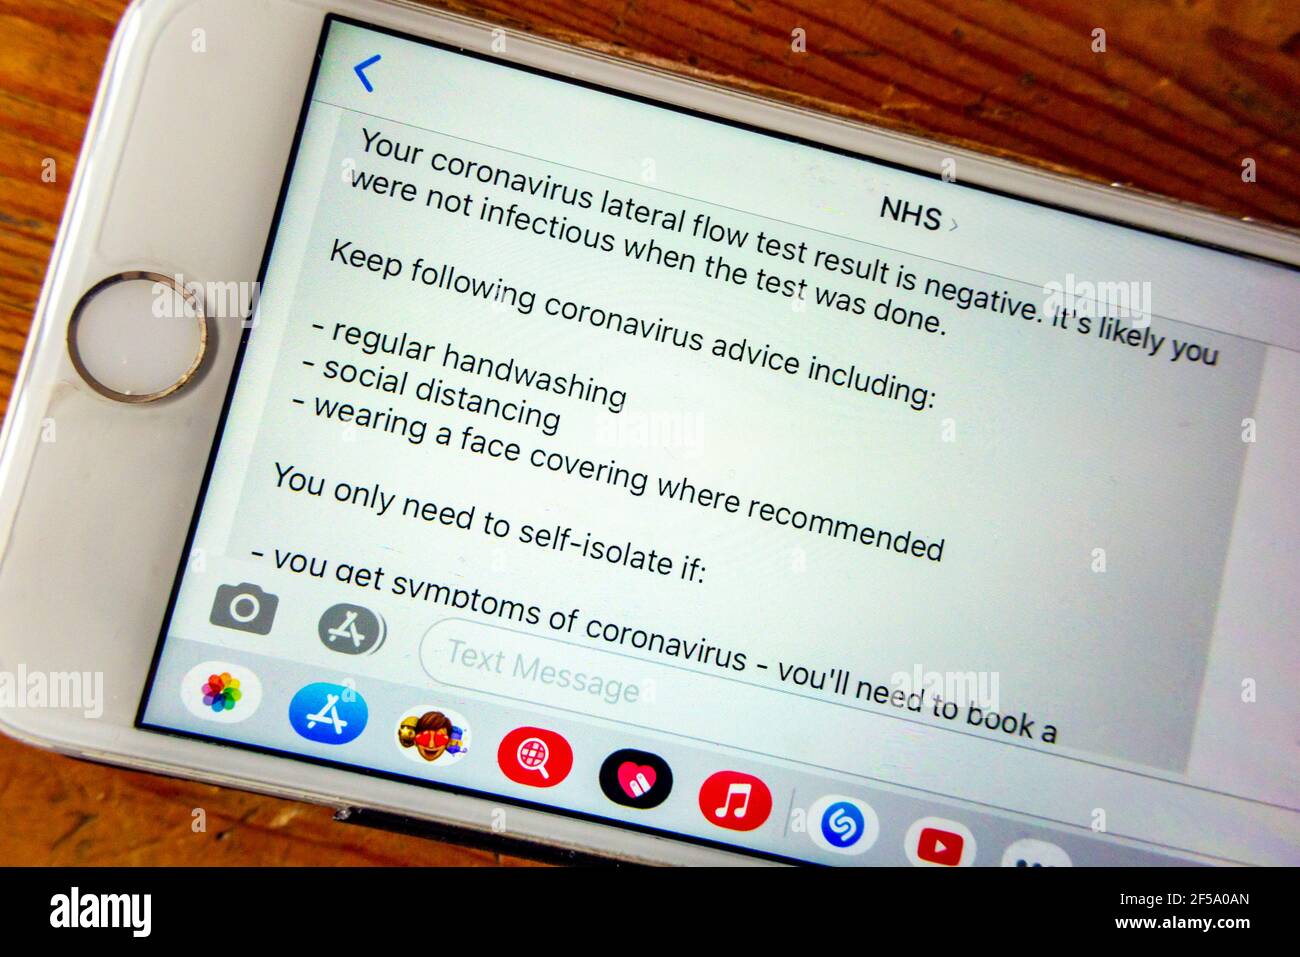 Teléfono móvil que muestra los resultados negativos de un lateral coronavirus Prueba de flujo enviada desde el NHS durante el tercer Reino Unido bloqueo de la pandemia en 2021 Foto de stock